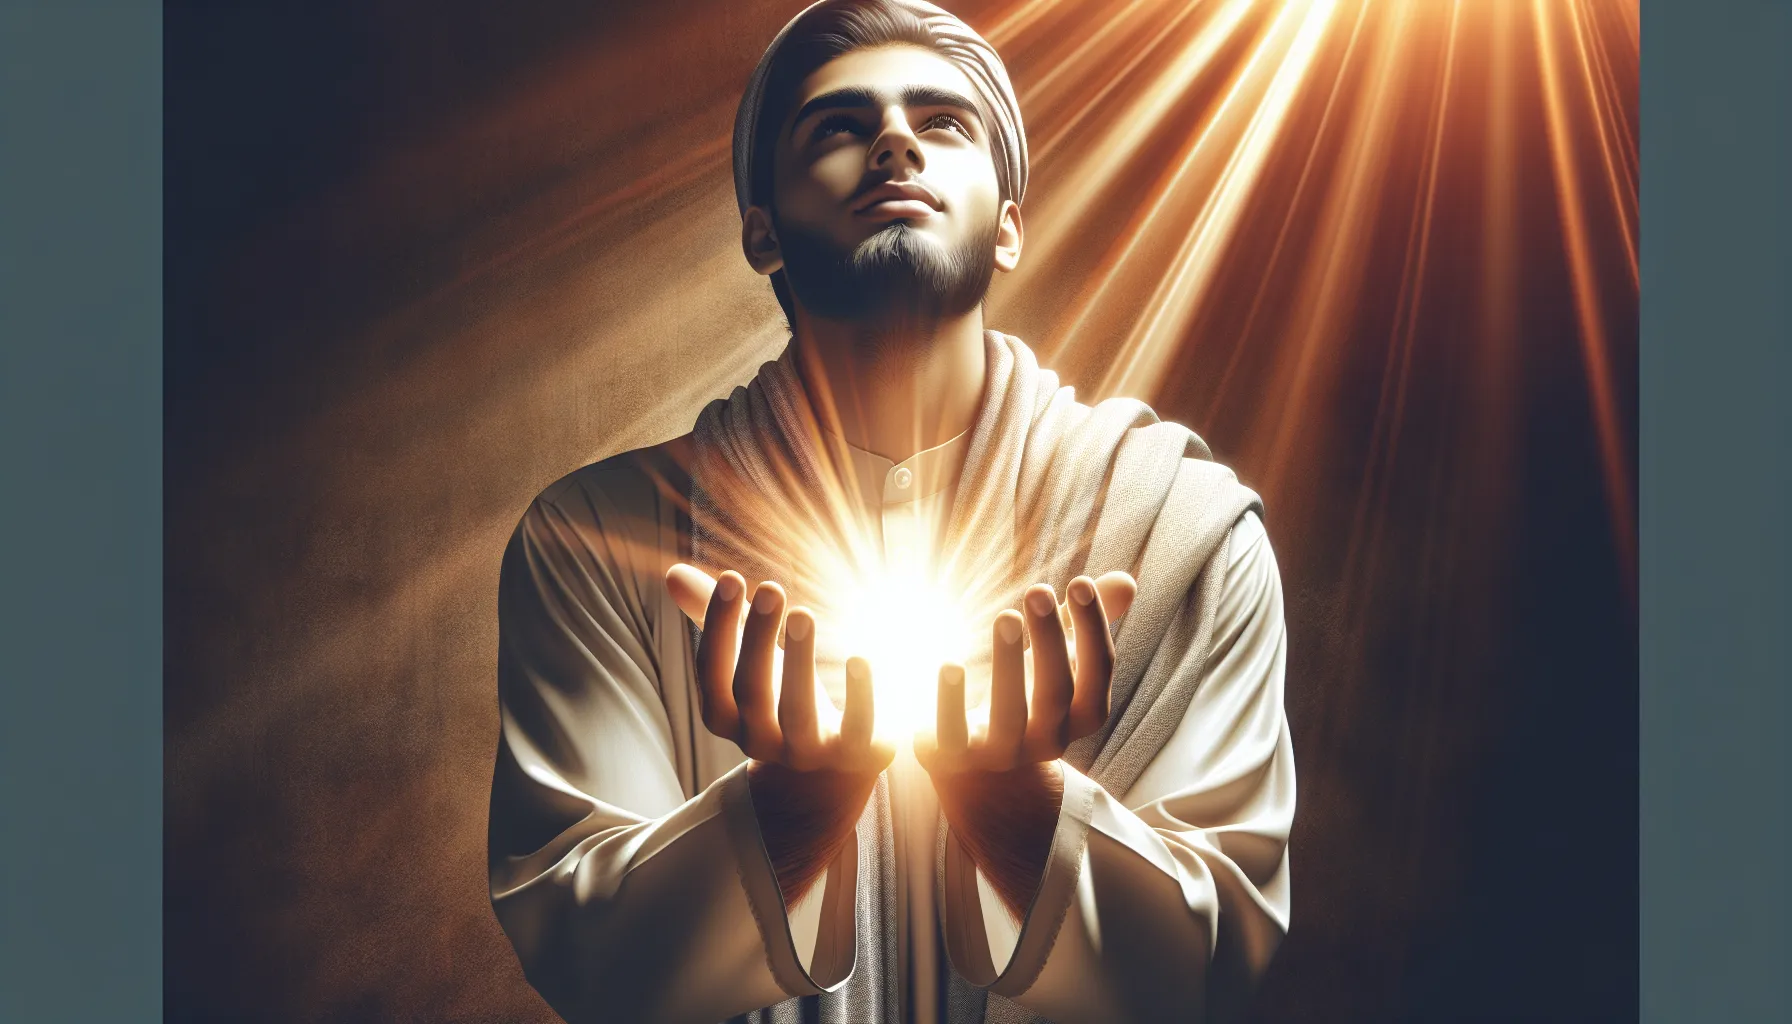 Imagen de una persona con los brazos abiertos recibiendo una luz brillante y cálida, simbolizando la protección divina en la vida cotidiana.